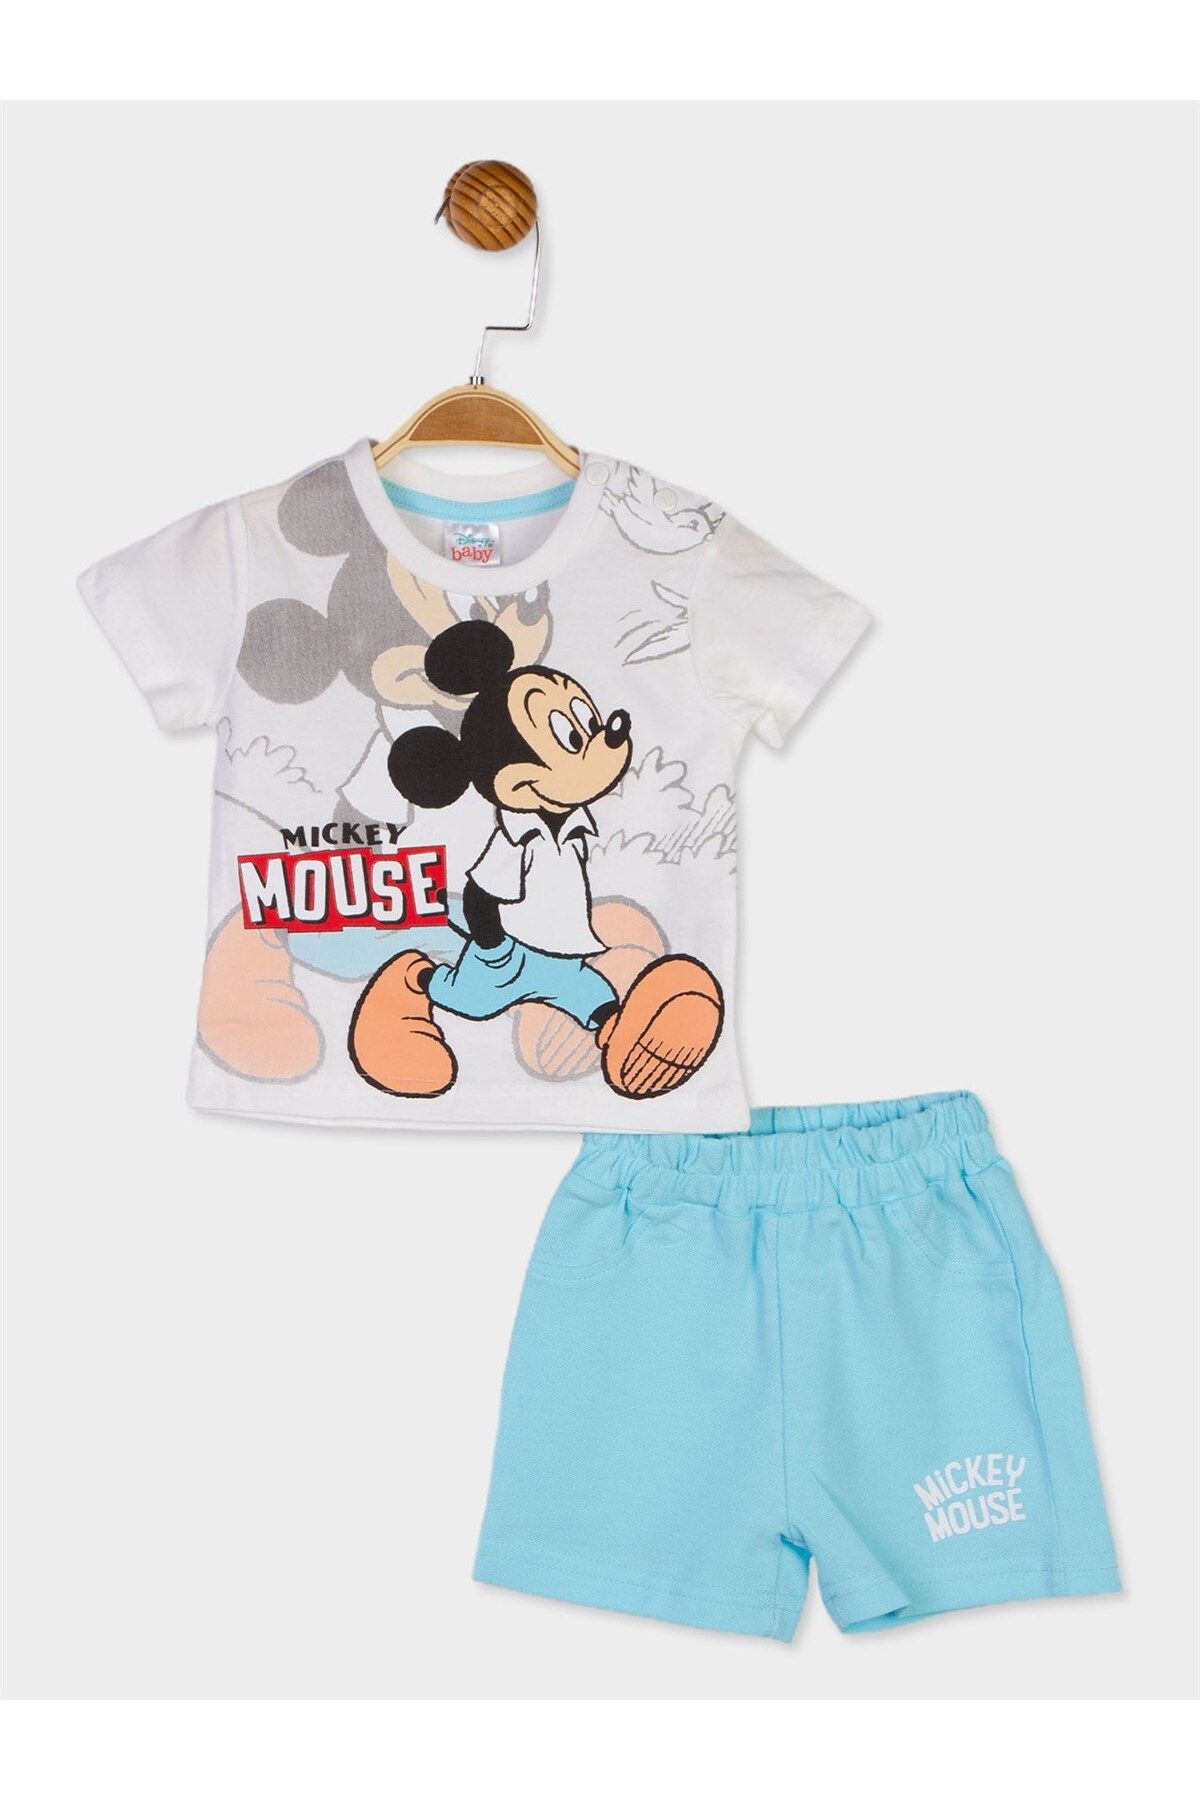 Mickey Mouse Disney Lisanslı Erkek Bebek Tişört Ve Şort 2'li Takım 20890